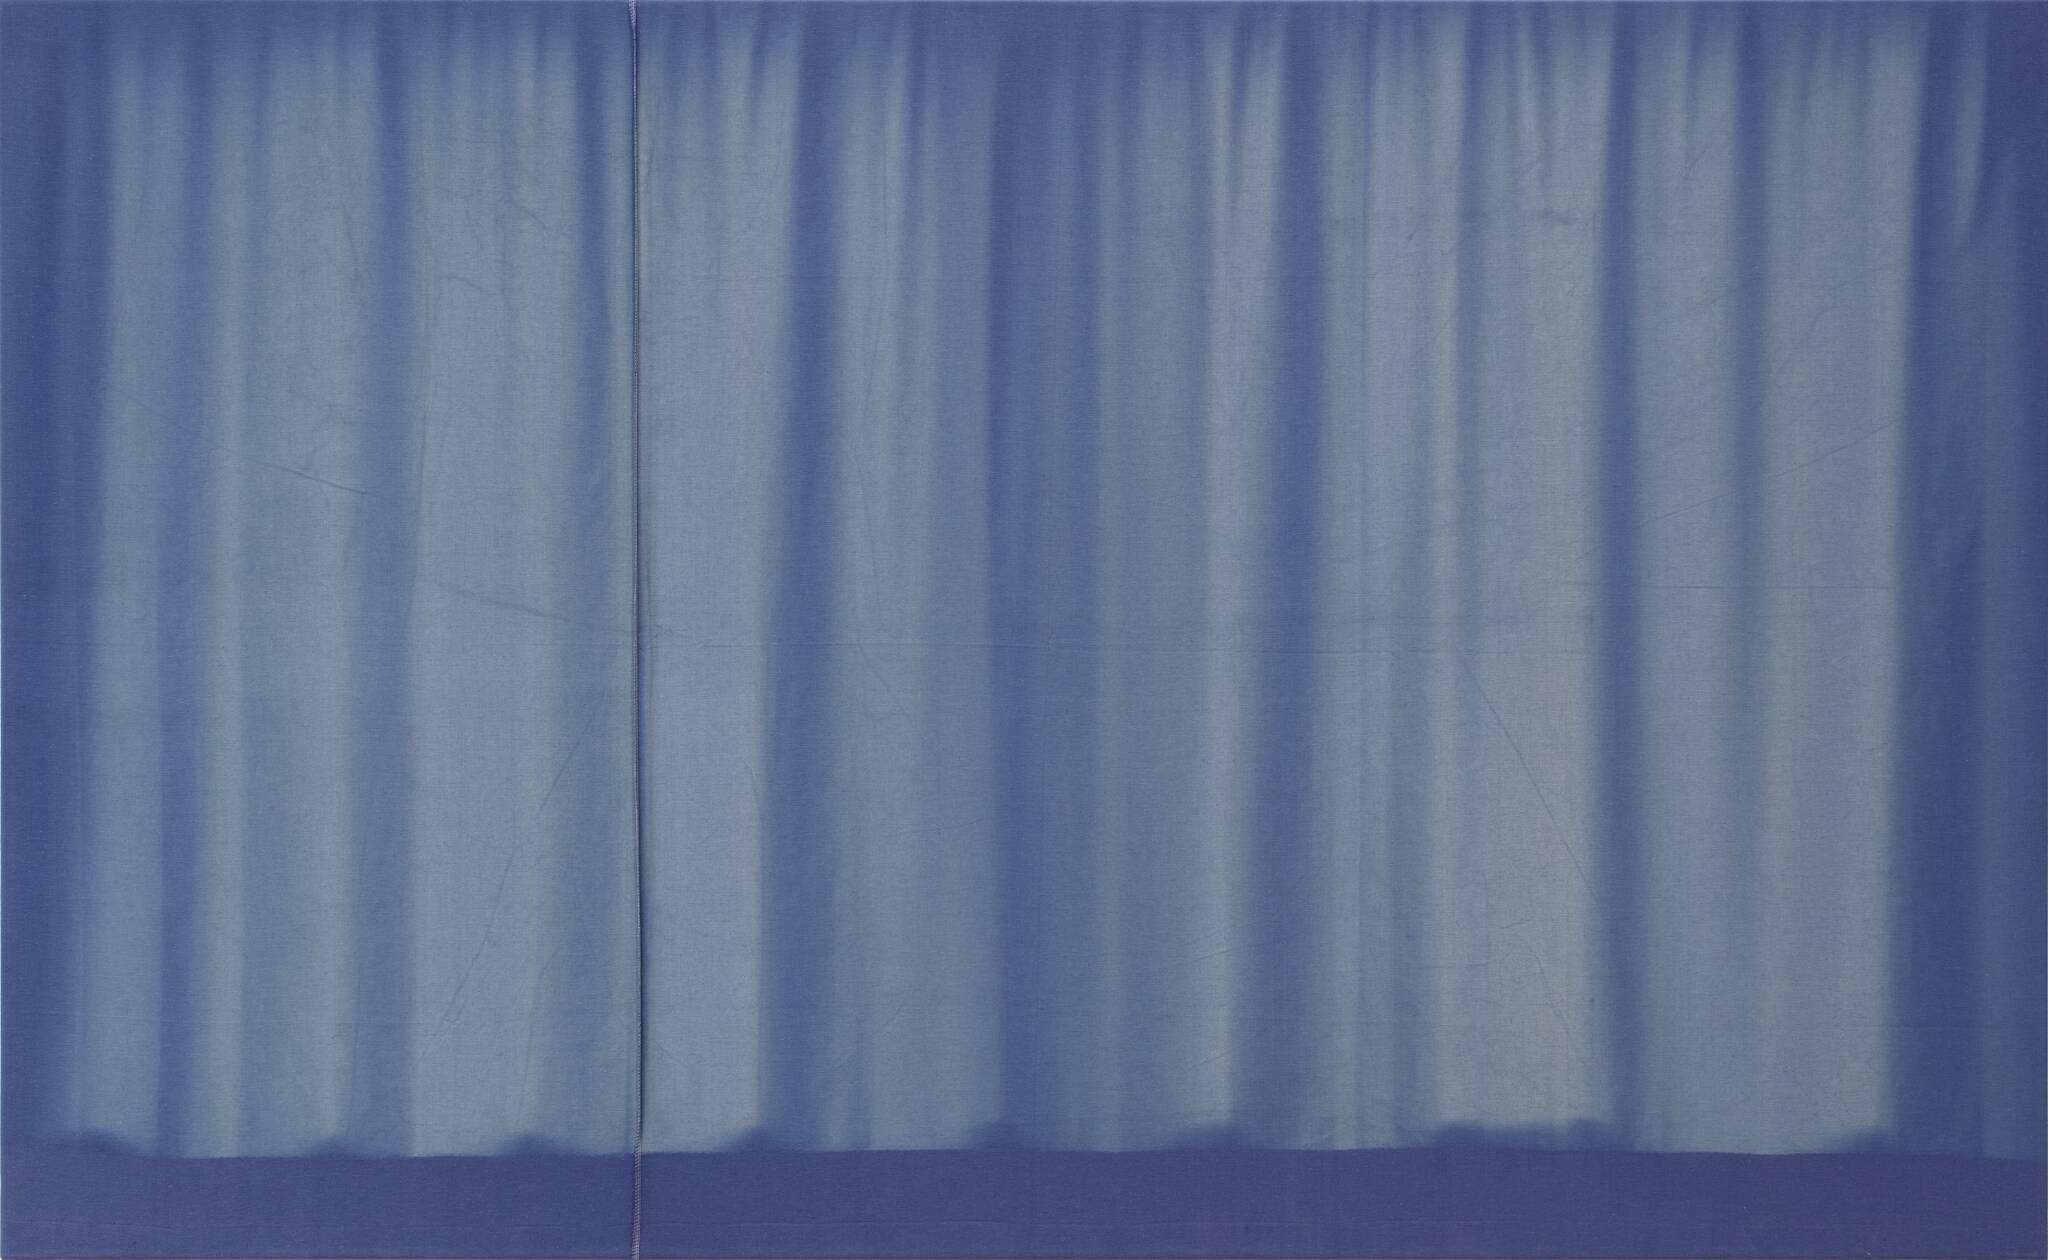 Fig. 1. Marie Lund: <em>Stills</em>, 2013 (detalje). Fundne solblegede gardiner opspændt på blændrammer. Statens Museum for Kunst. KMS8978. © Marie Lund / VISDA